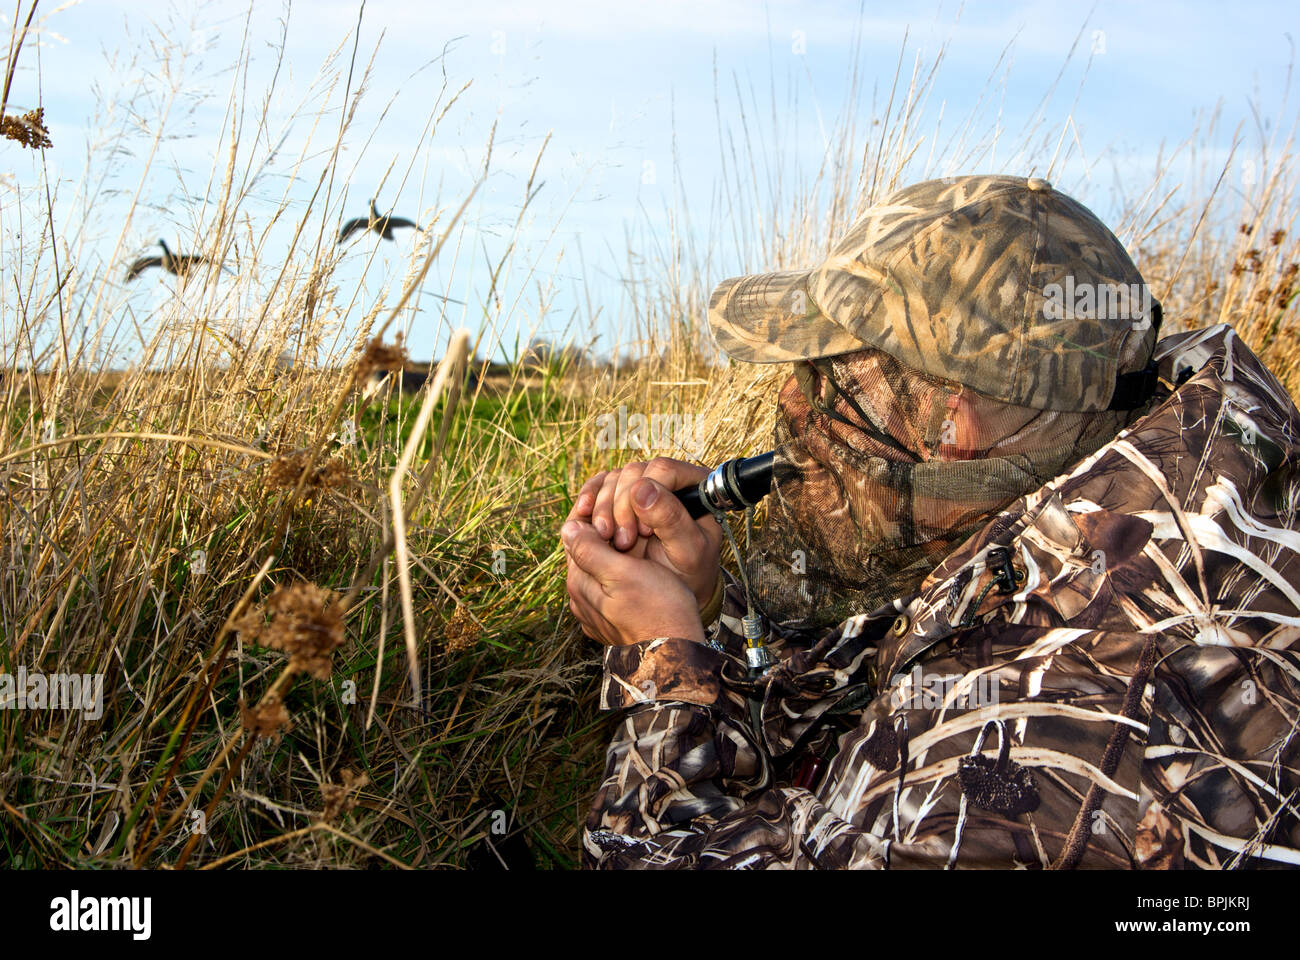 Jäger in Tarnkleidung mit Gans Anruf um eingehende paar Gänse in der Nähe von grasigen Graben Blind zu bringen Stockfoto